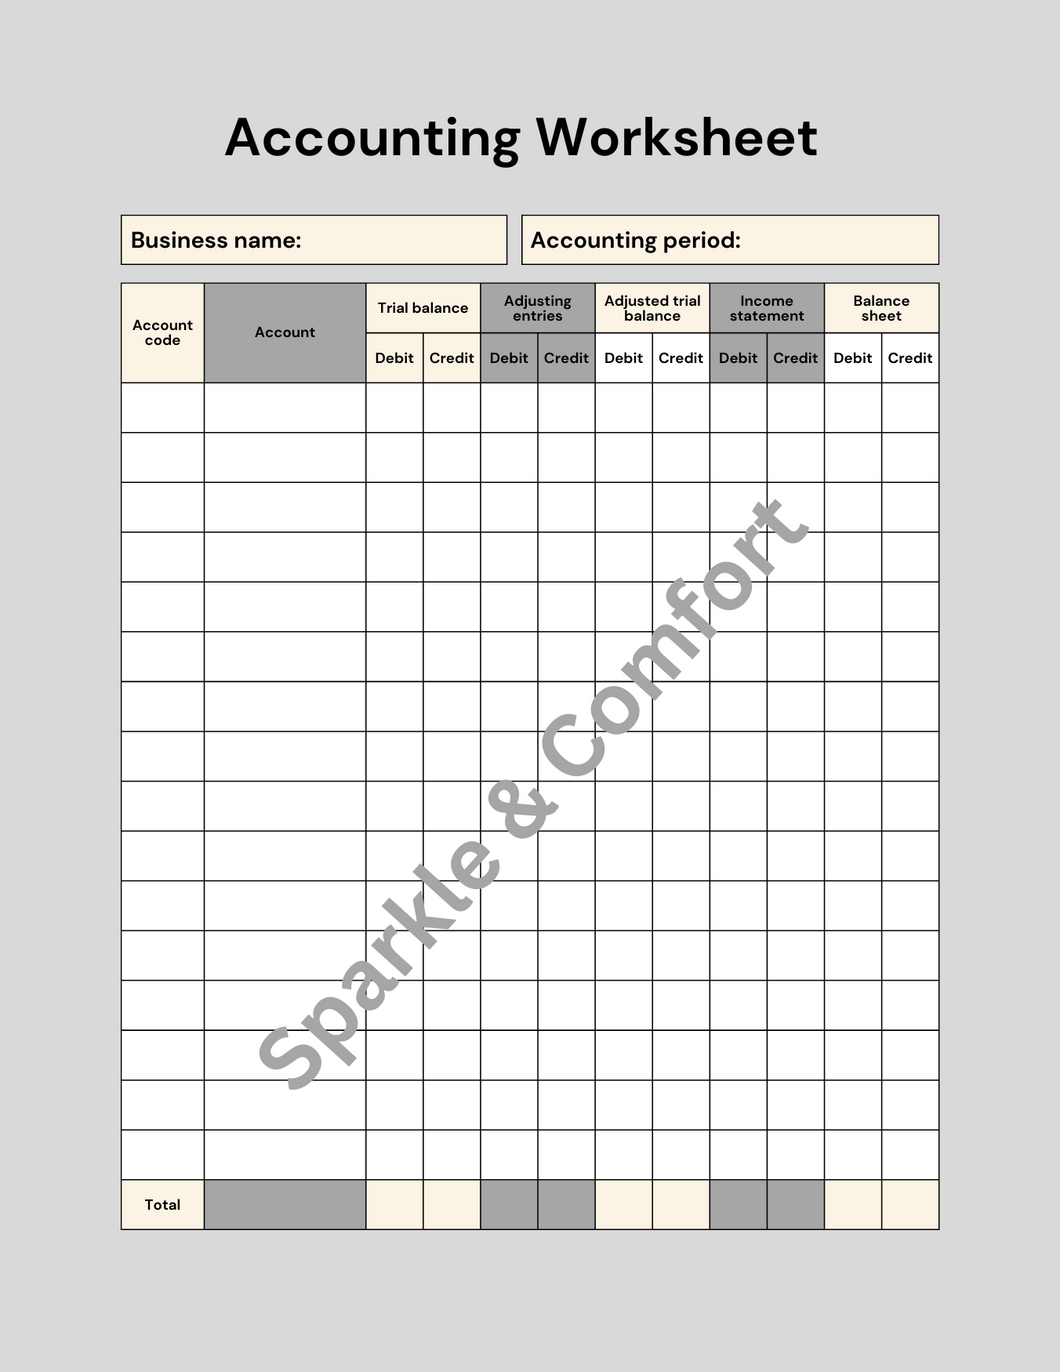 Digital Planner - Printable Accounting Worksheet